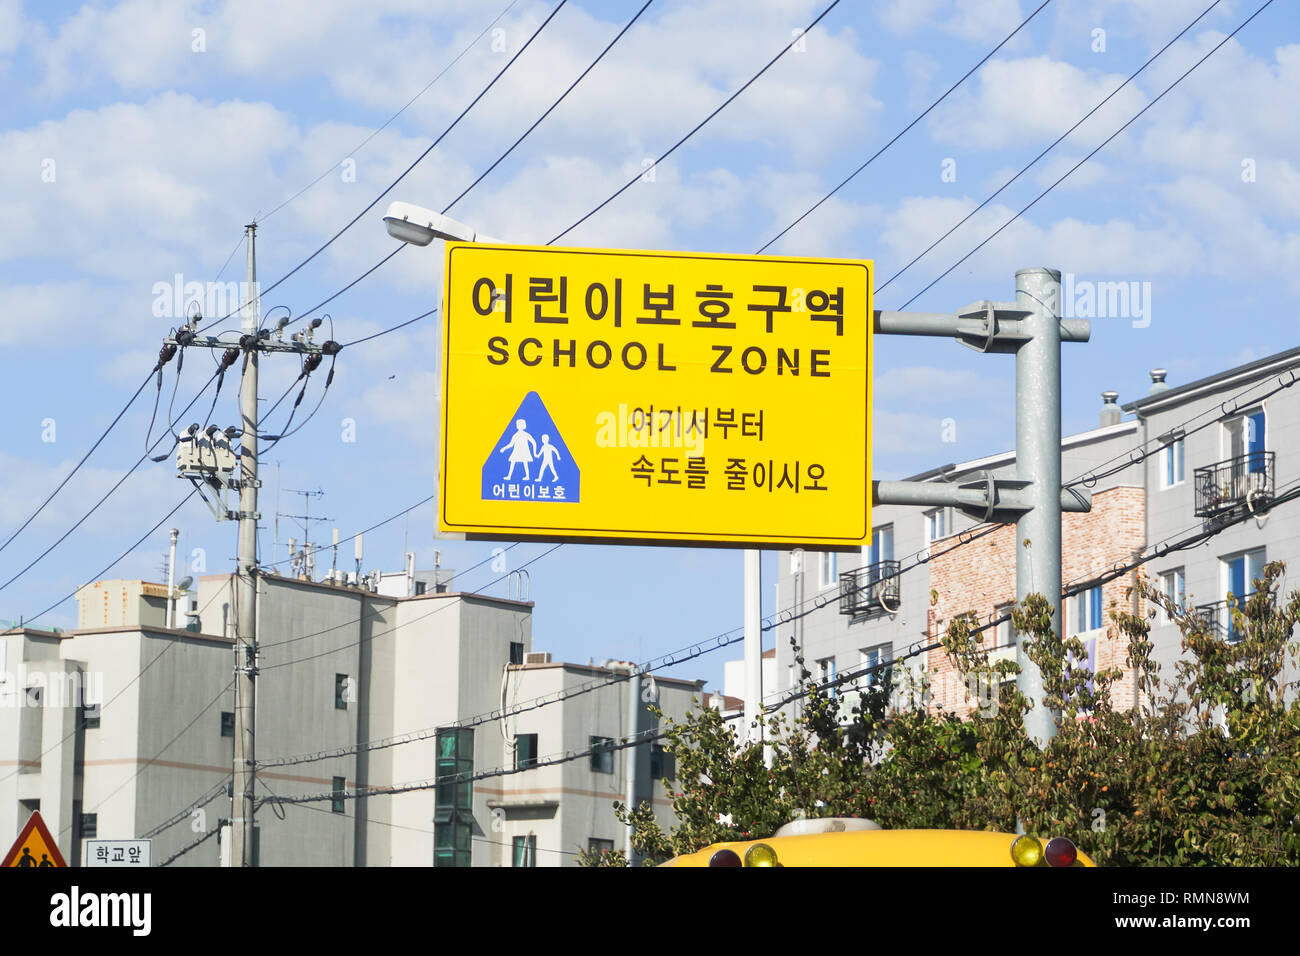 De Gimpo, Corea - Septiembre 10, 2018: zona escolar señales que limitan la velocidad de conducción, cerca de la escuela para la seguridad del estudiante. Foto de stock